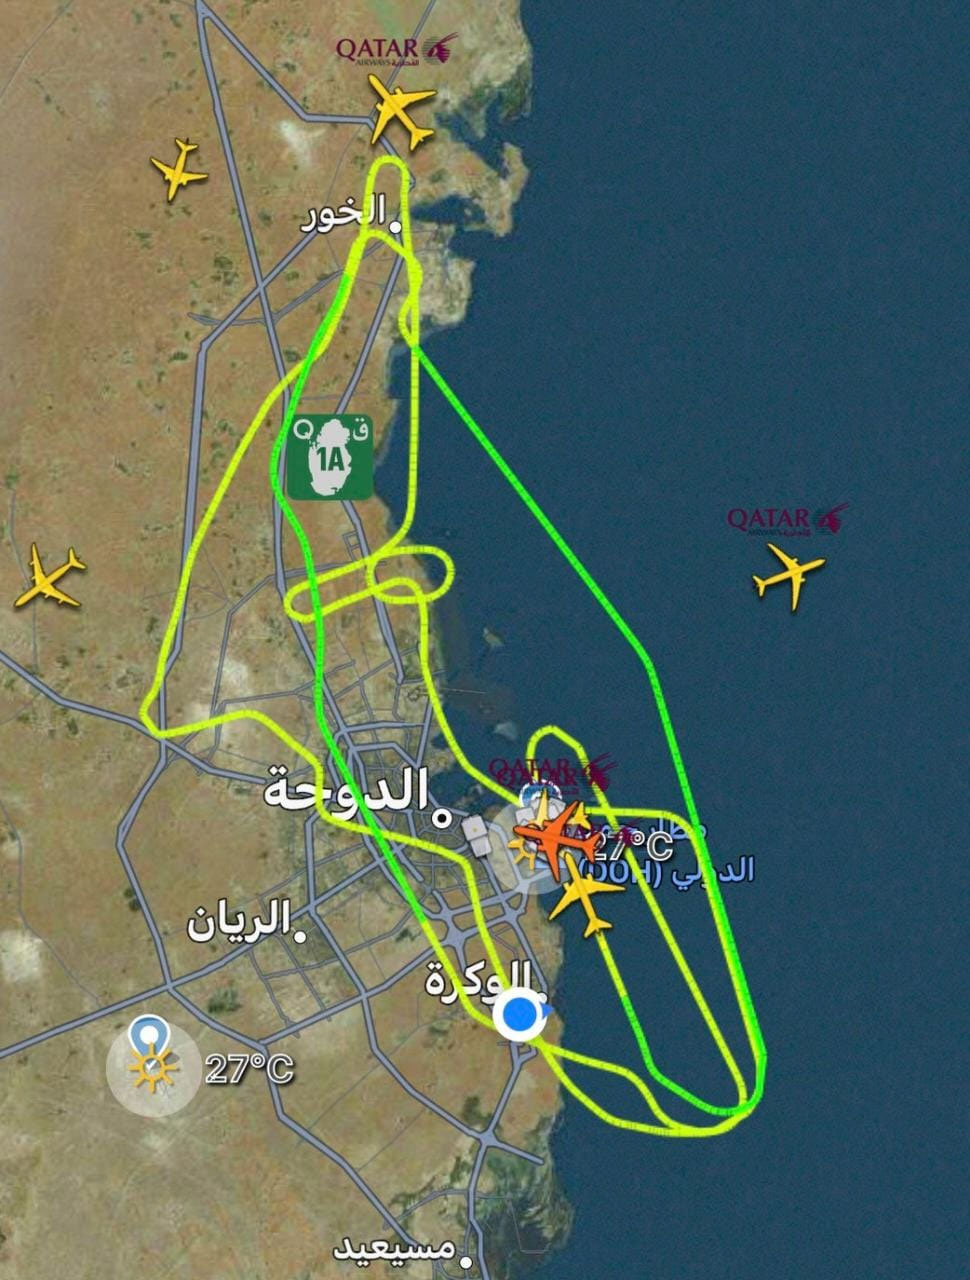 قطر ائیر ویز کی پرواز کیو آر 2022 نے دوحہ انٹرنیشنل ائیرپورٹ سے صبح 10 بجکر 17 منٹ پر ٹیک آف کیا— فوٹو: افضل ندیم ڈوگر